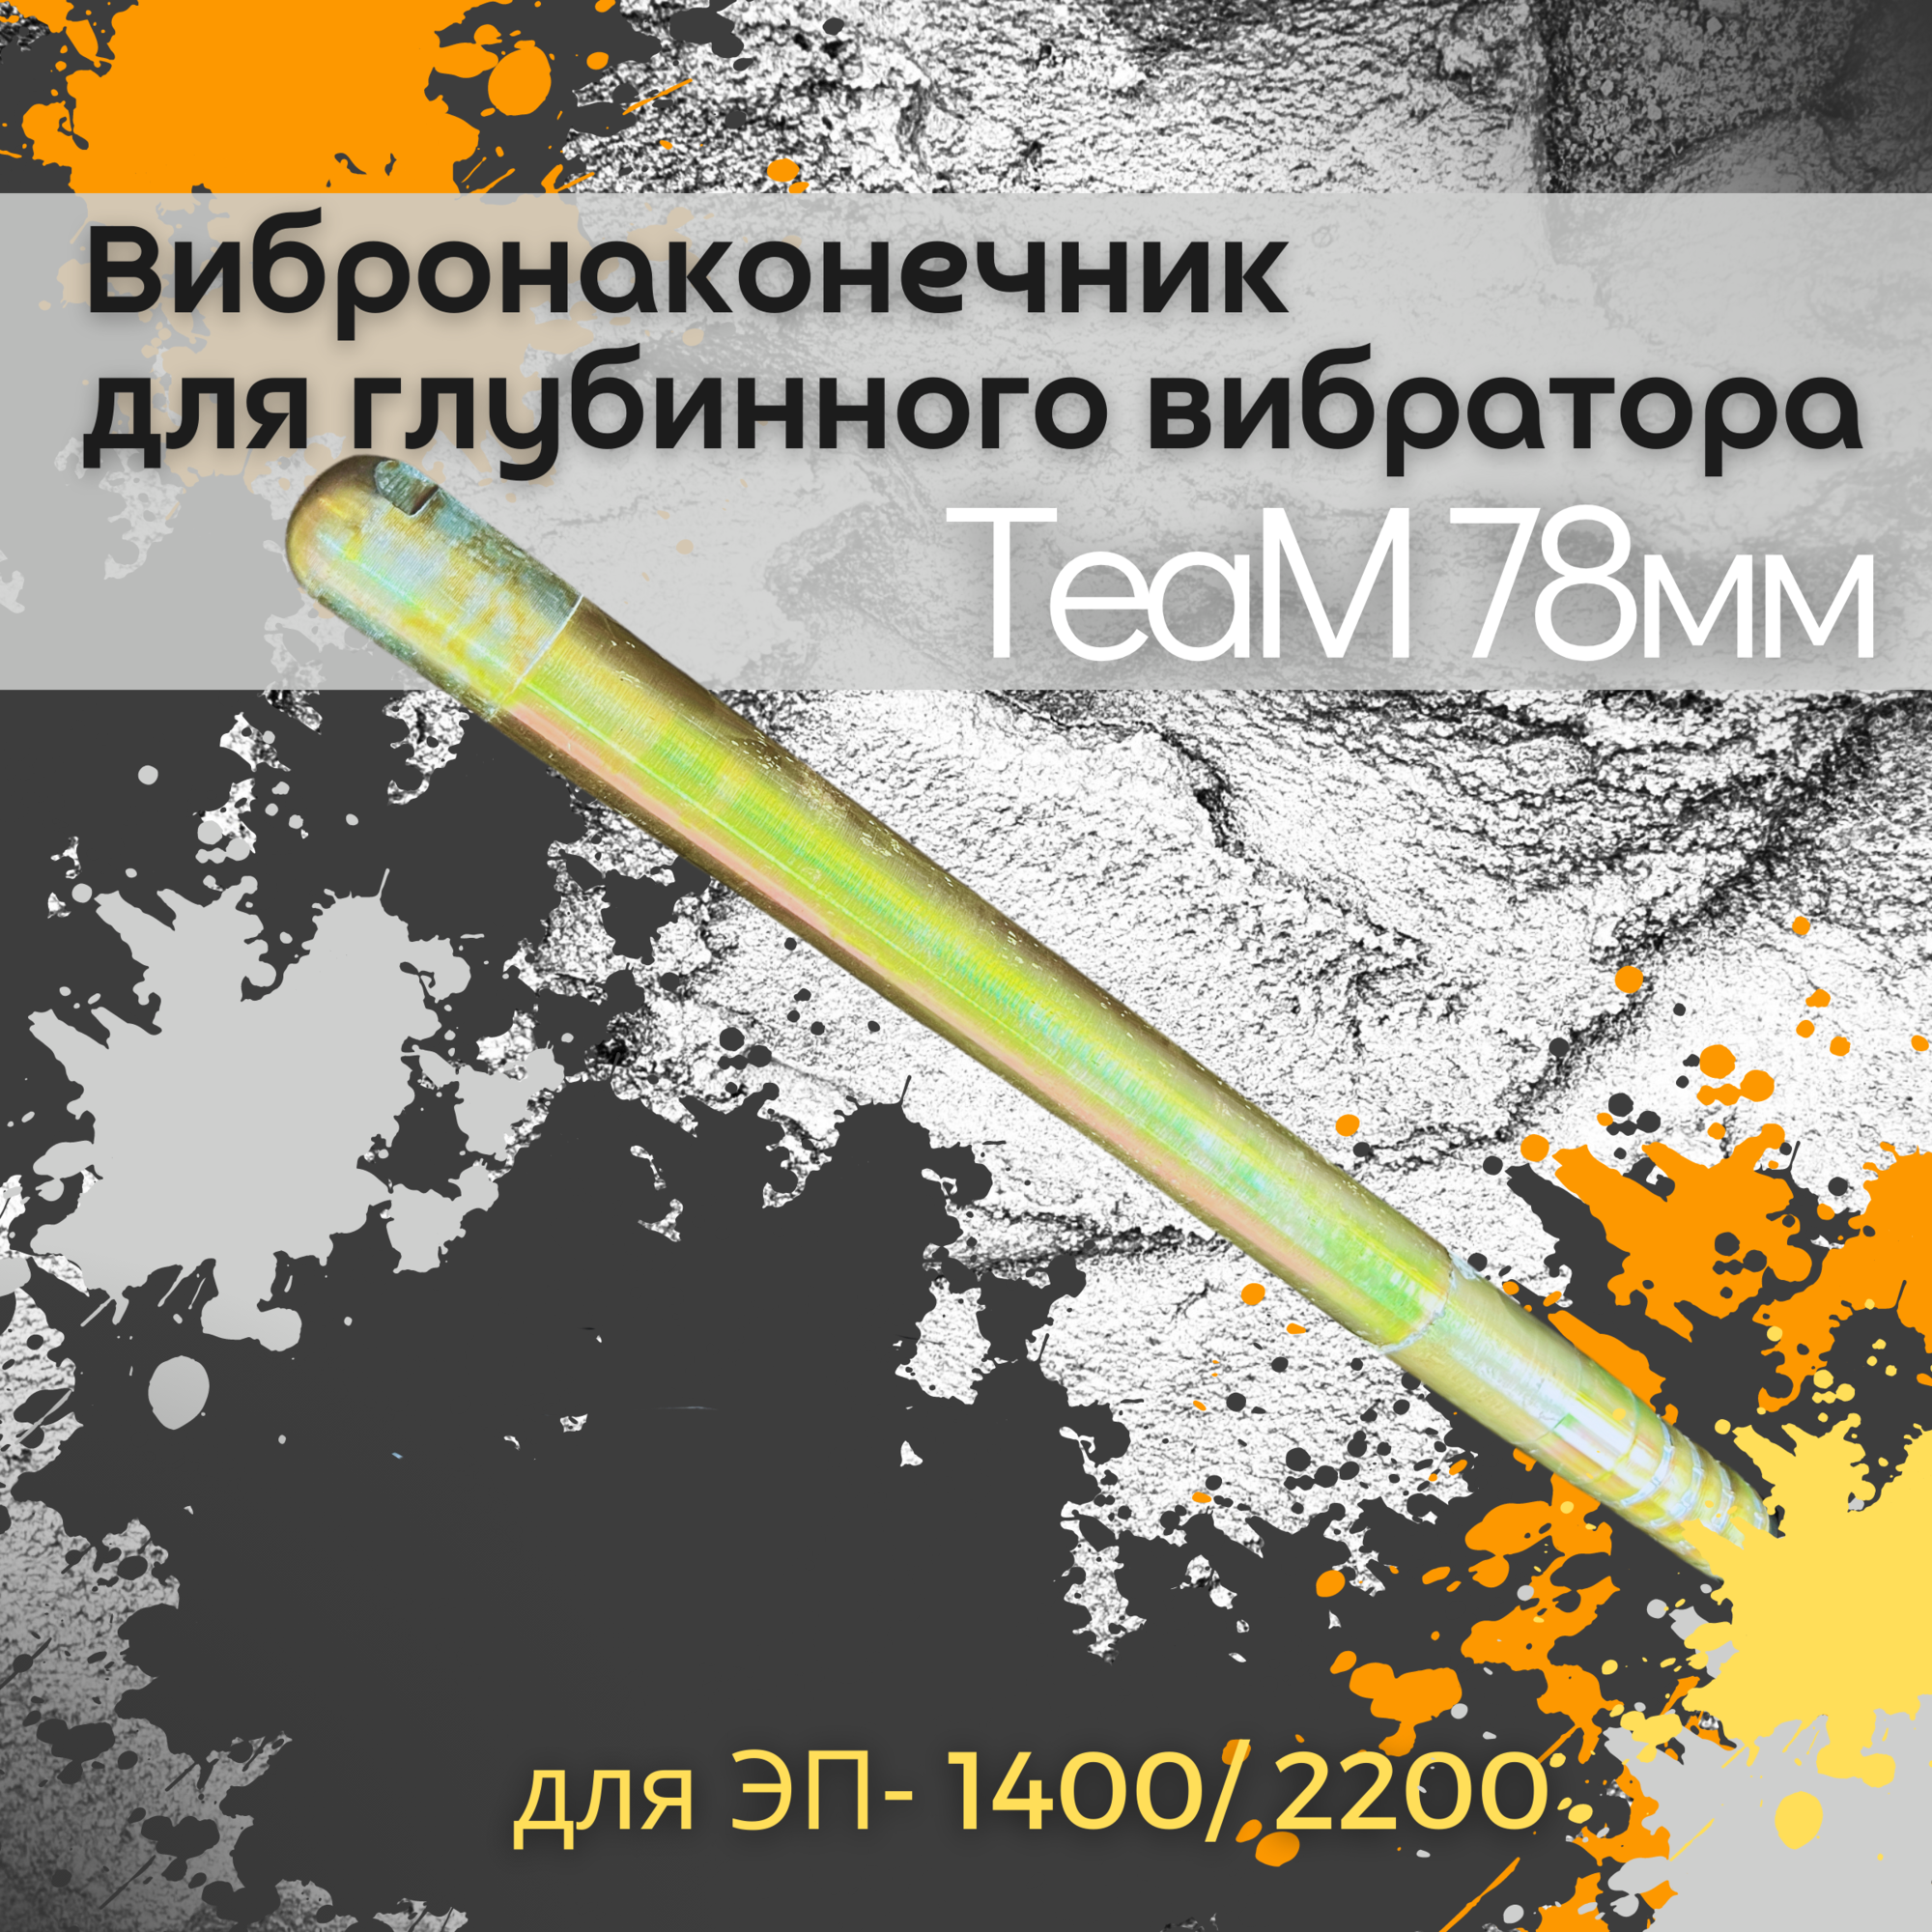 Вибронаконечник TeaM 76 мм для ЭП-1400/2200 1